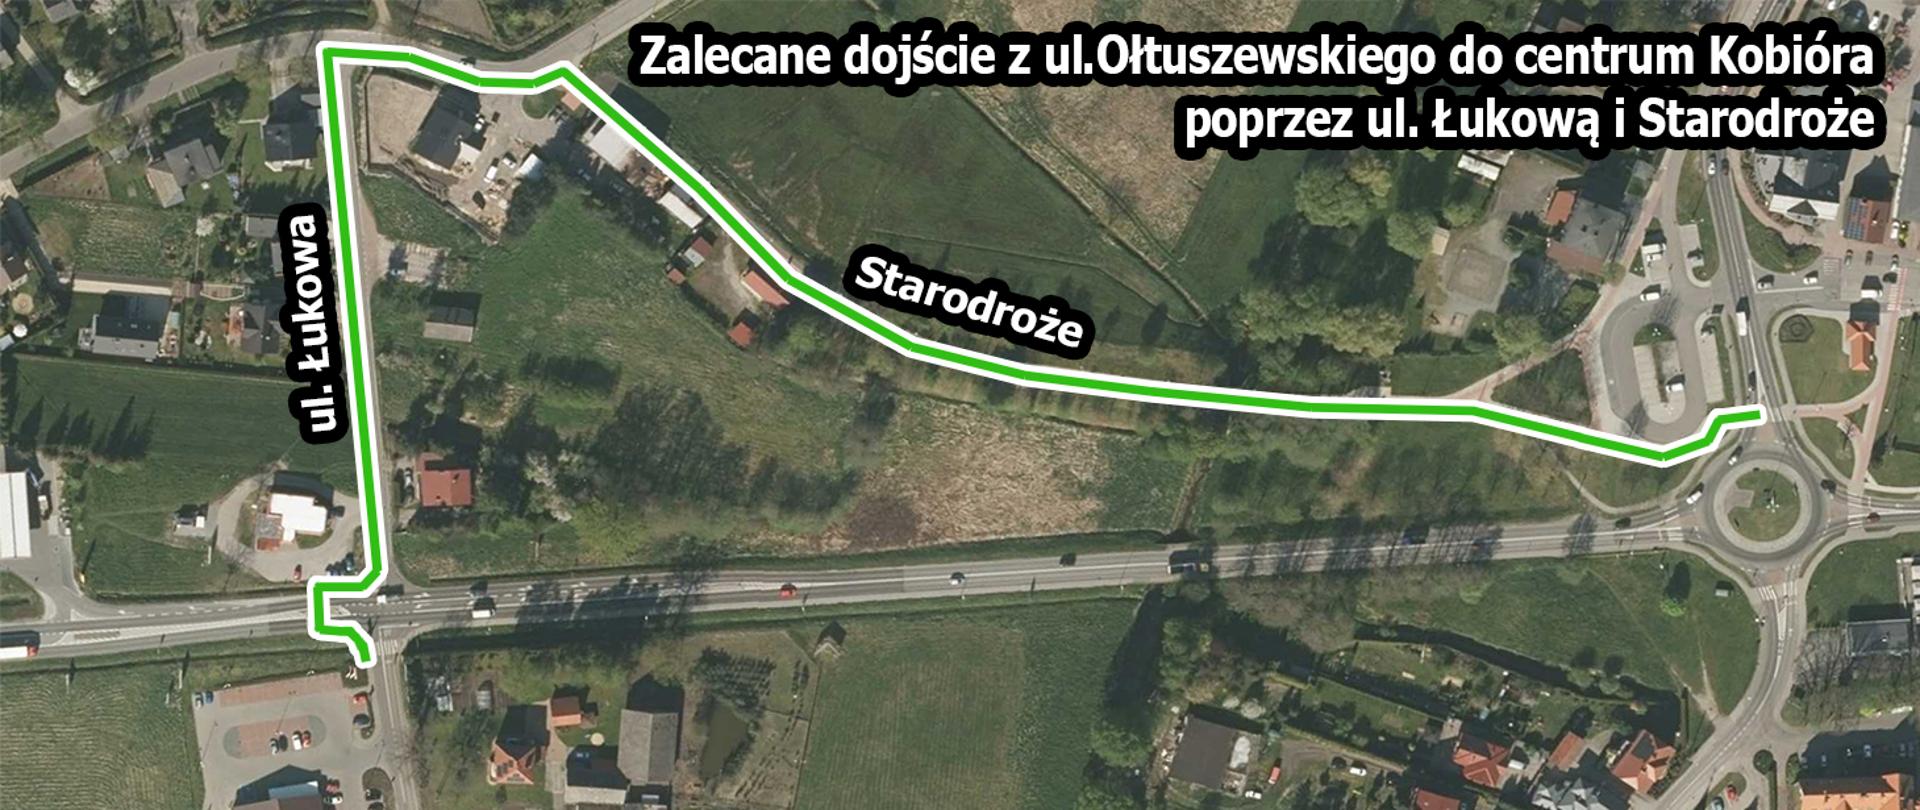 Mapka z zaznaczonym na zielono dojściem do centrum Kobióra